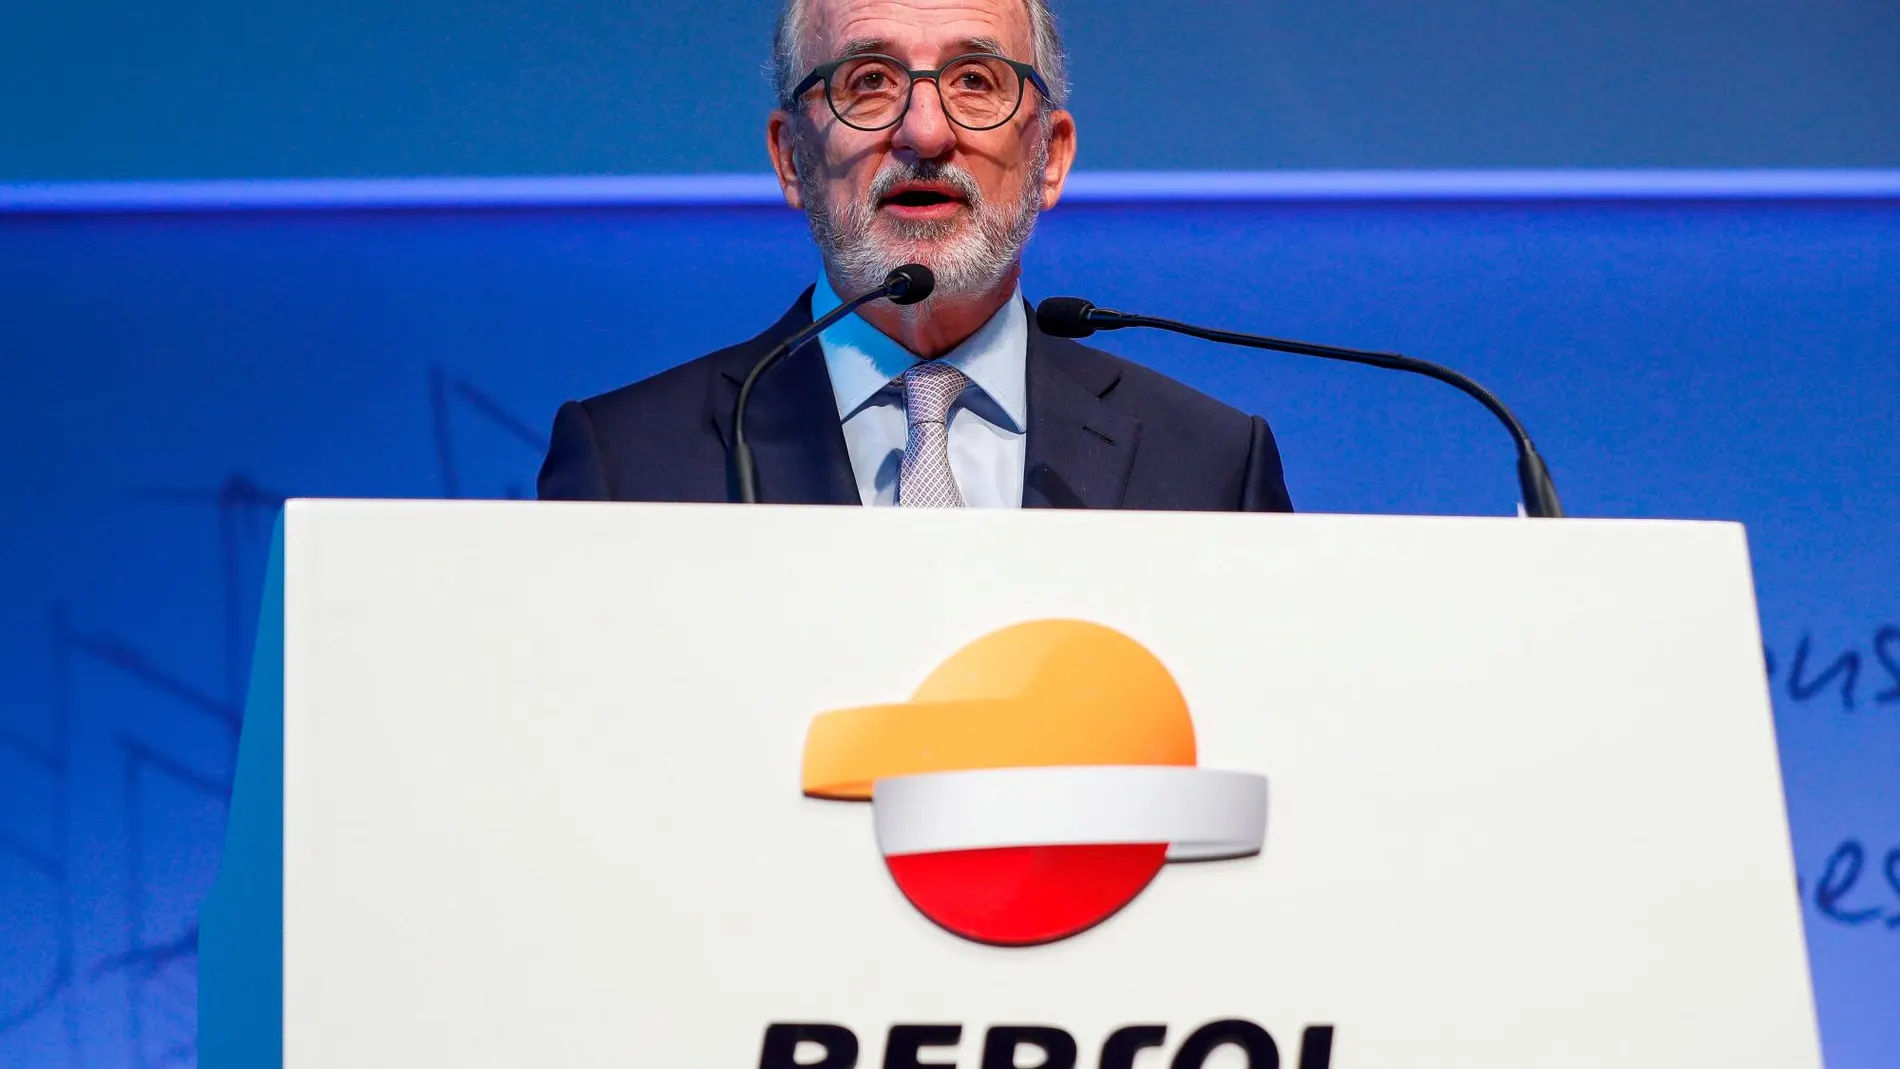 El presidente de Repsol, Antonio Brufau / Foto: Efe